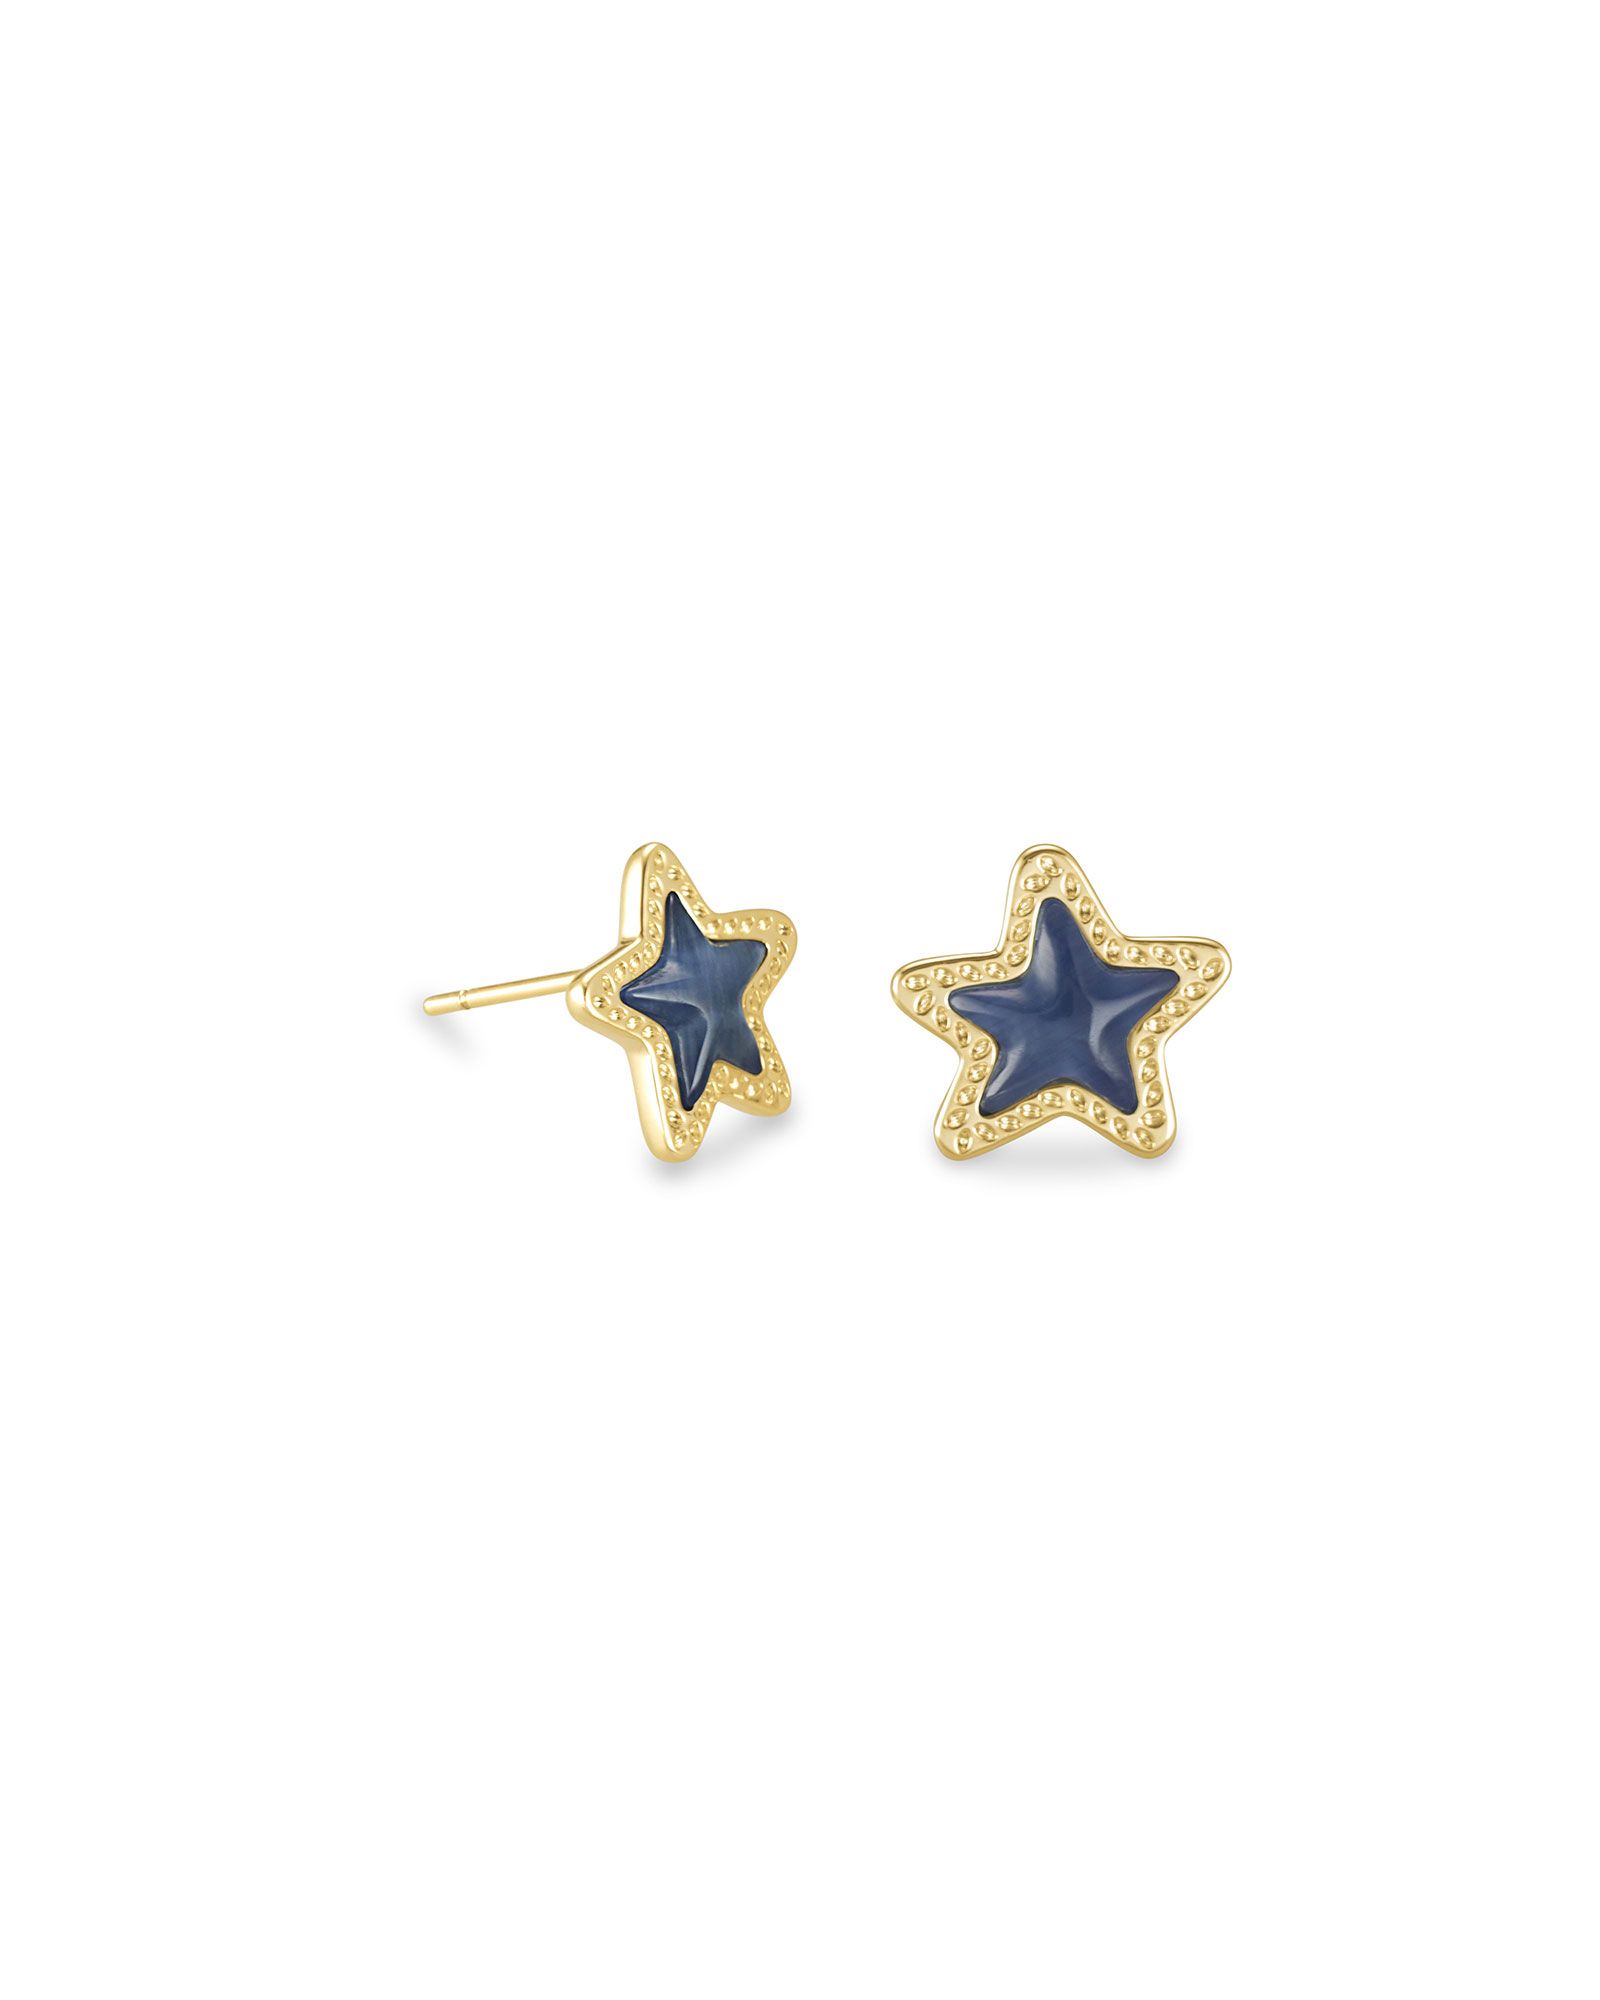 Jae Star Gold Stud Earrings in Navy Cat's Eye | Kendra Scott | Kendra Scott